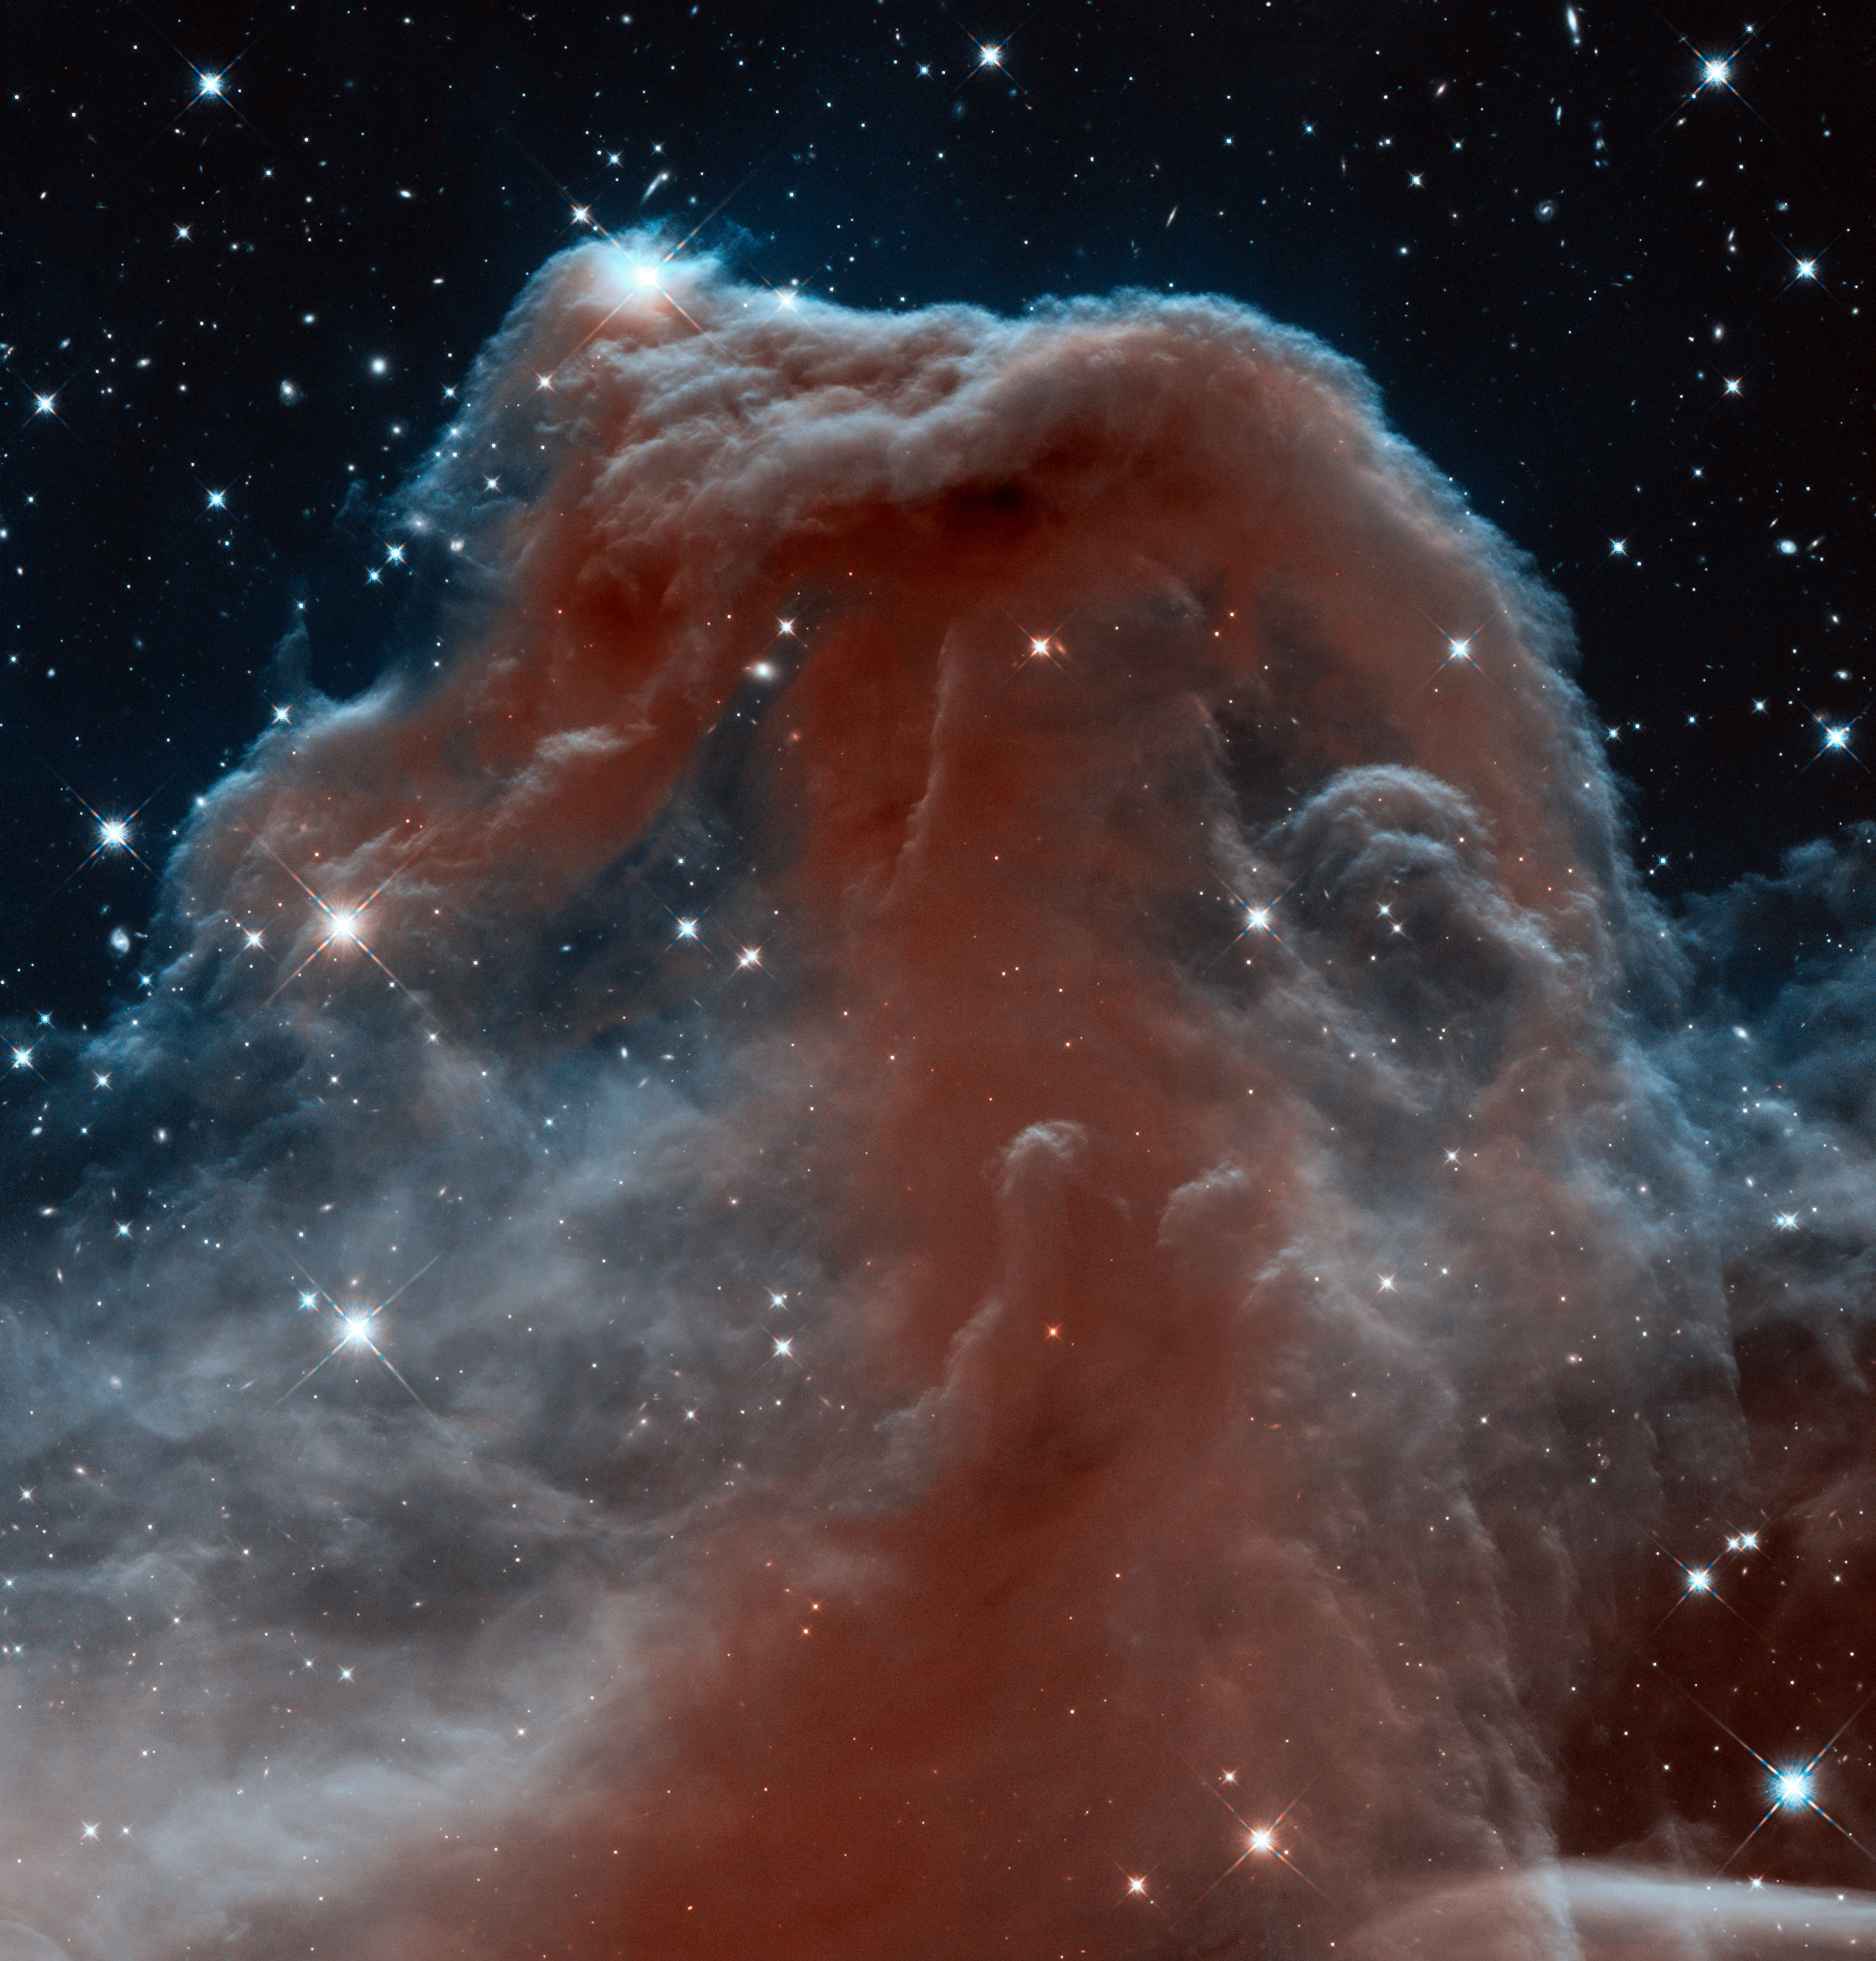 Image Archive: Nebulae | ESA/Hubble